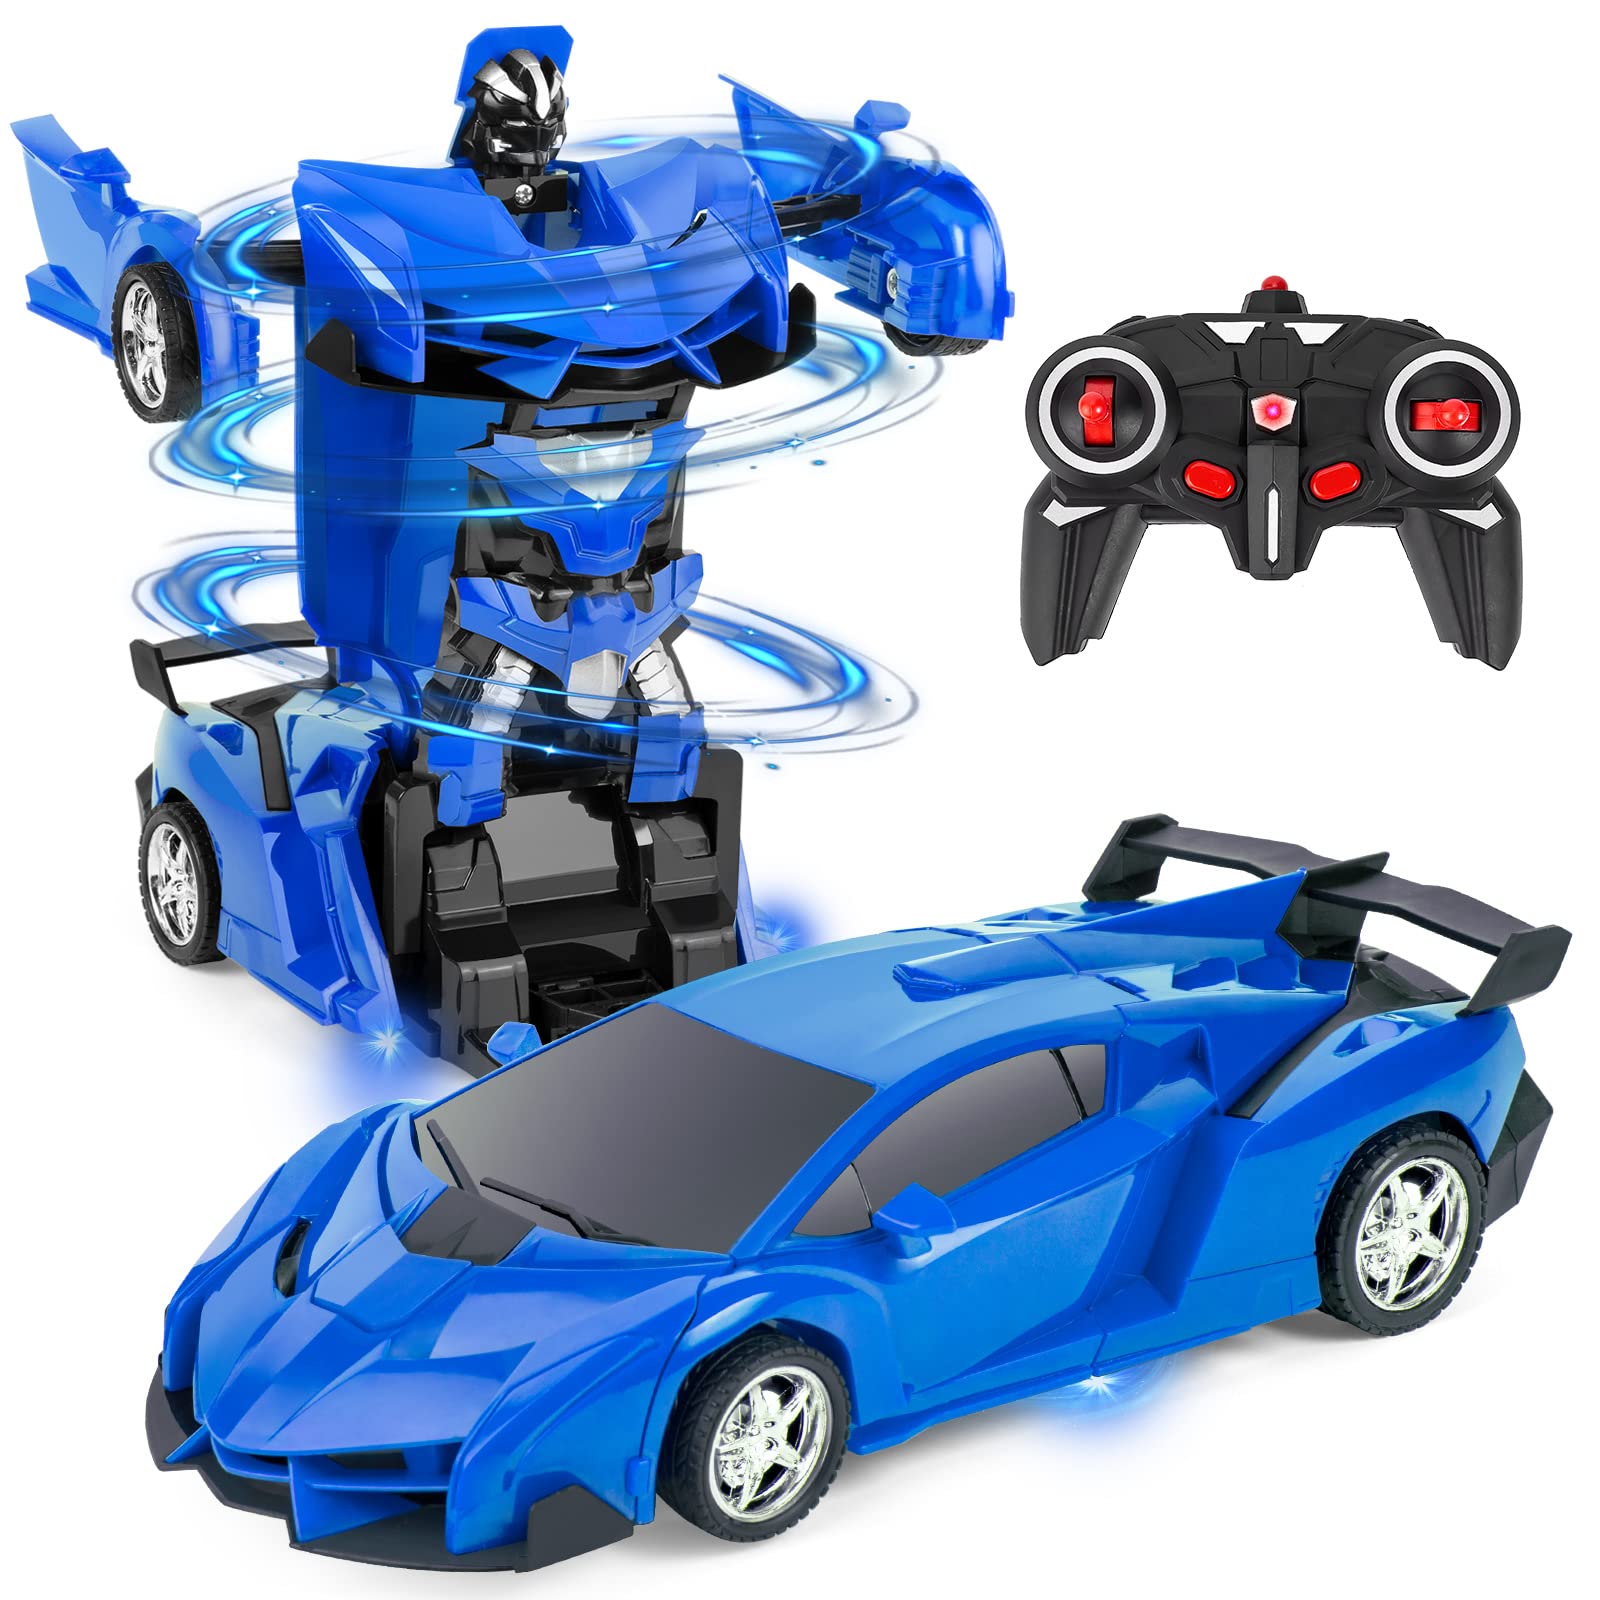 Highttoy Ferngesteuertes Transformator Auto Spielzeug für Kinder, 2.4GHz Roboter RC Auto Transformator Spielzeug für Jungs 3-12 Jahre Verformung Roboter Auto 360° Drehung 1:18 RC Rennwagen Blau